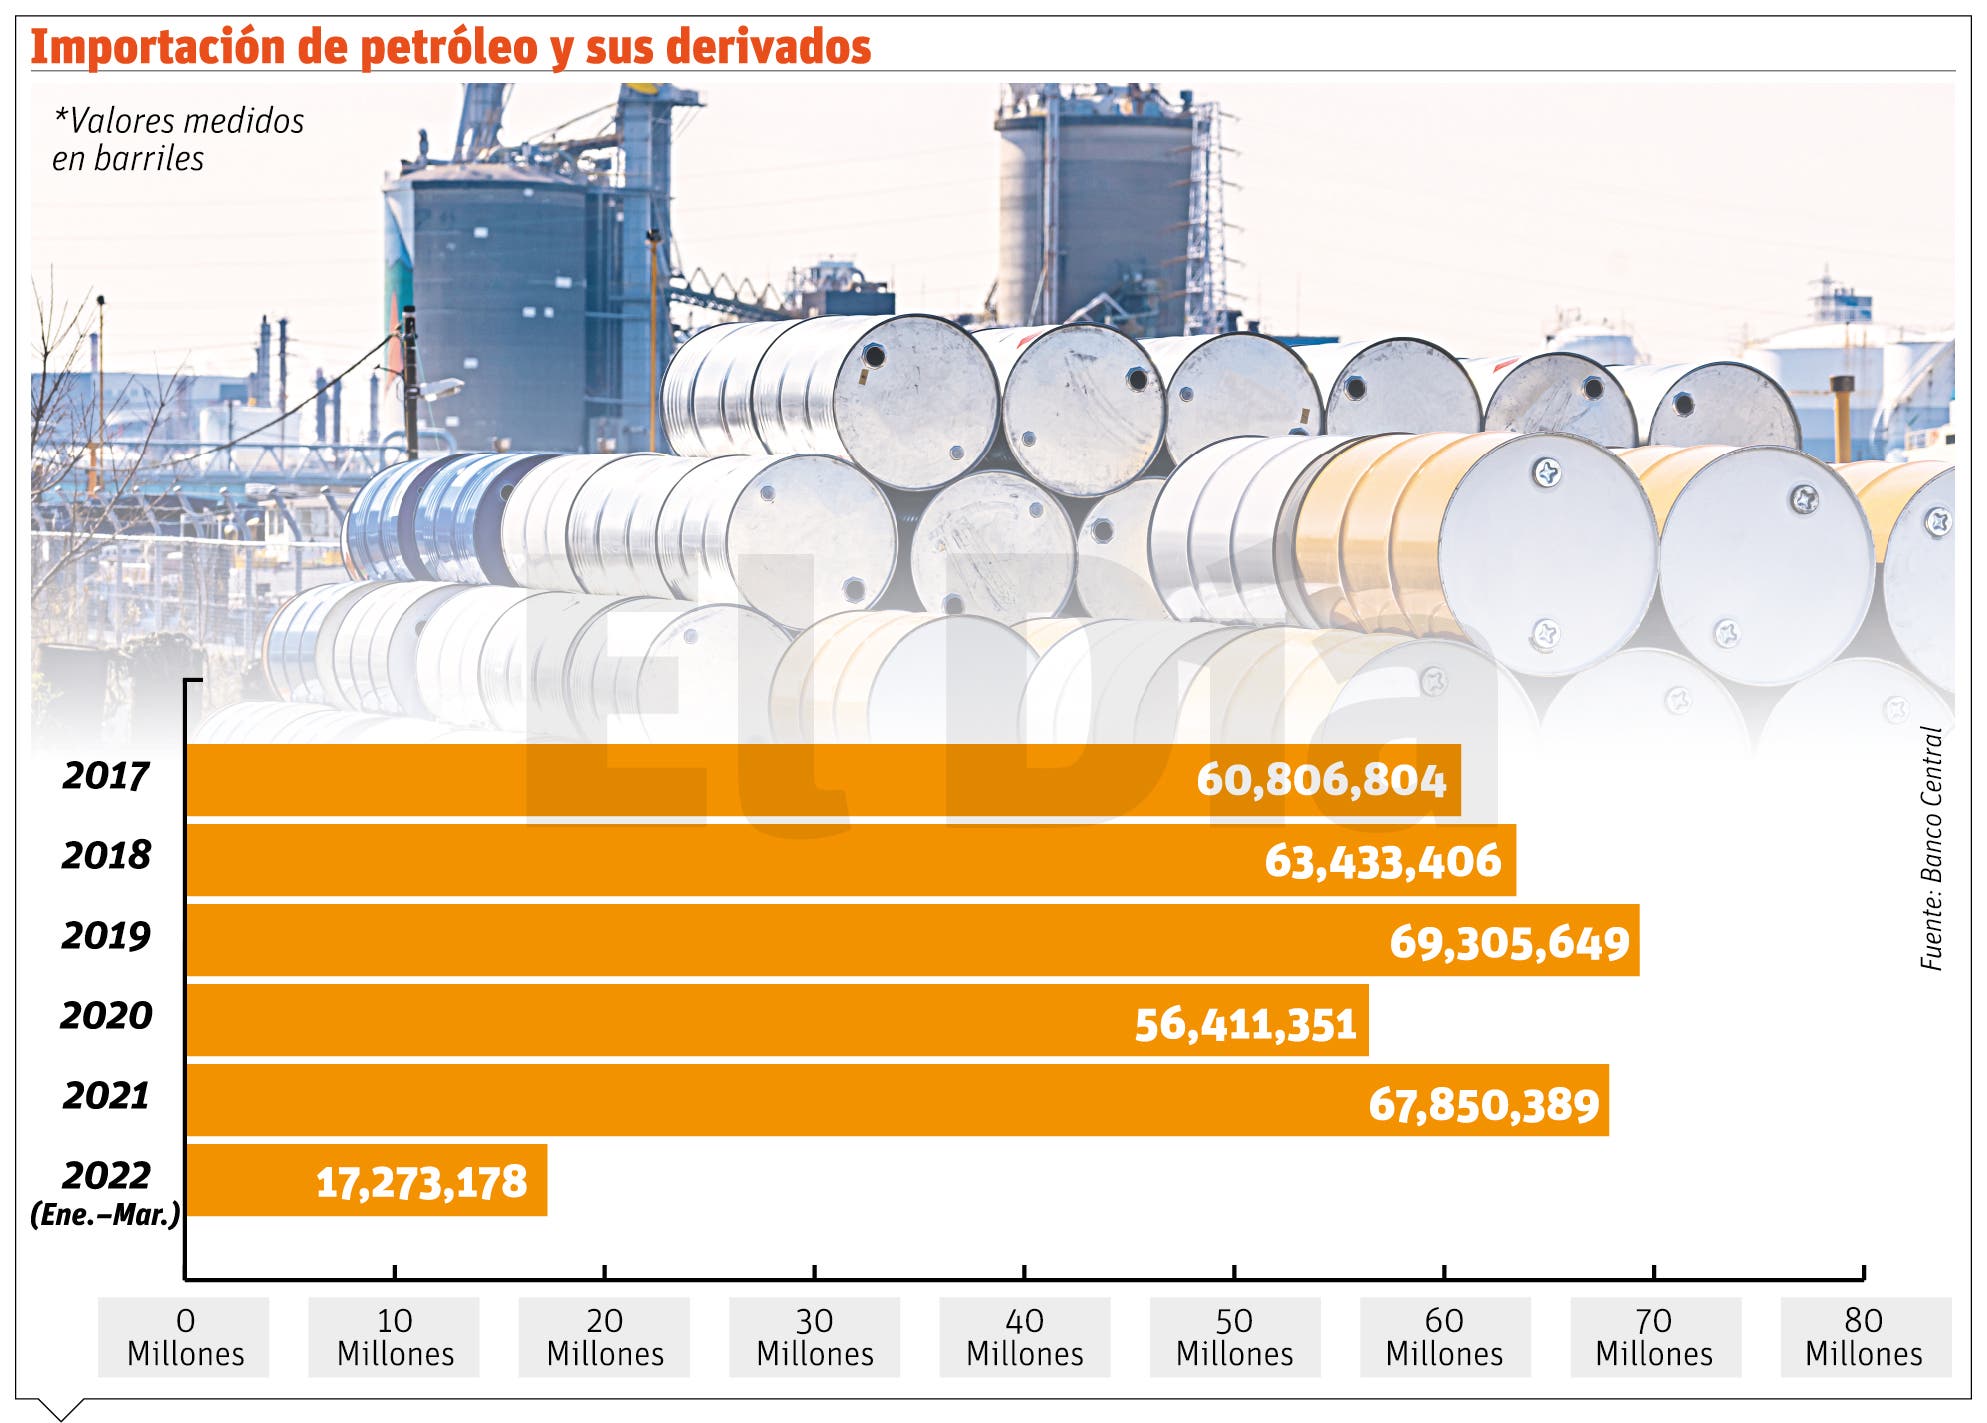 En RD se consumen 270.5 de galones de hidrocarburos per cápita